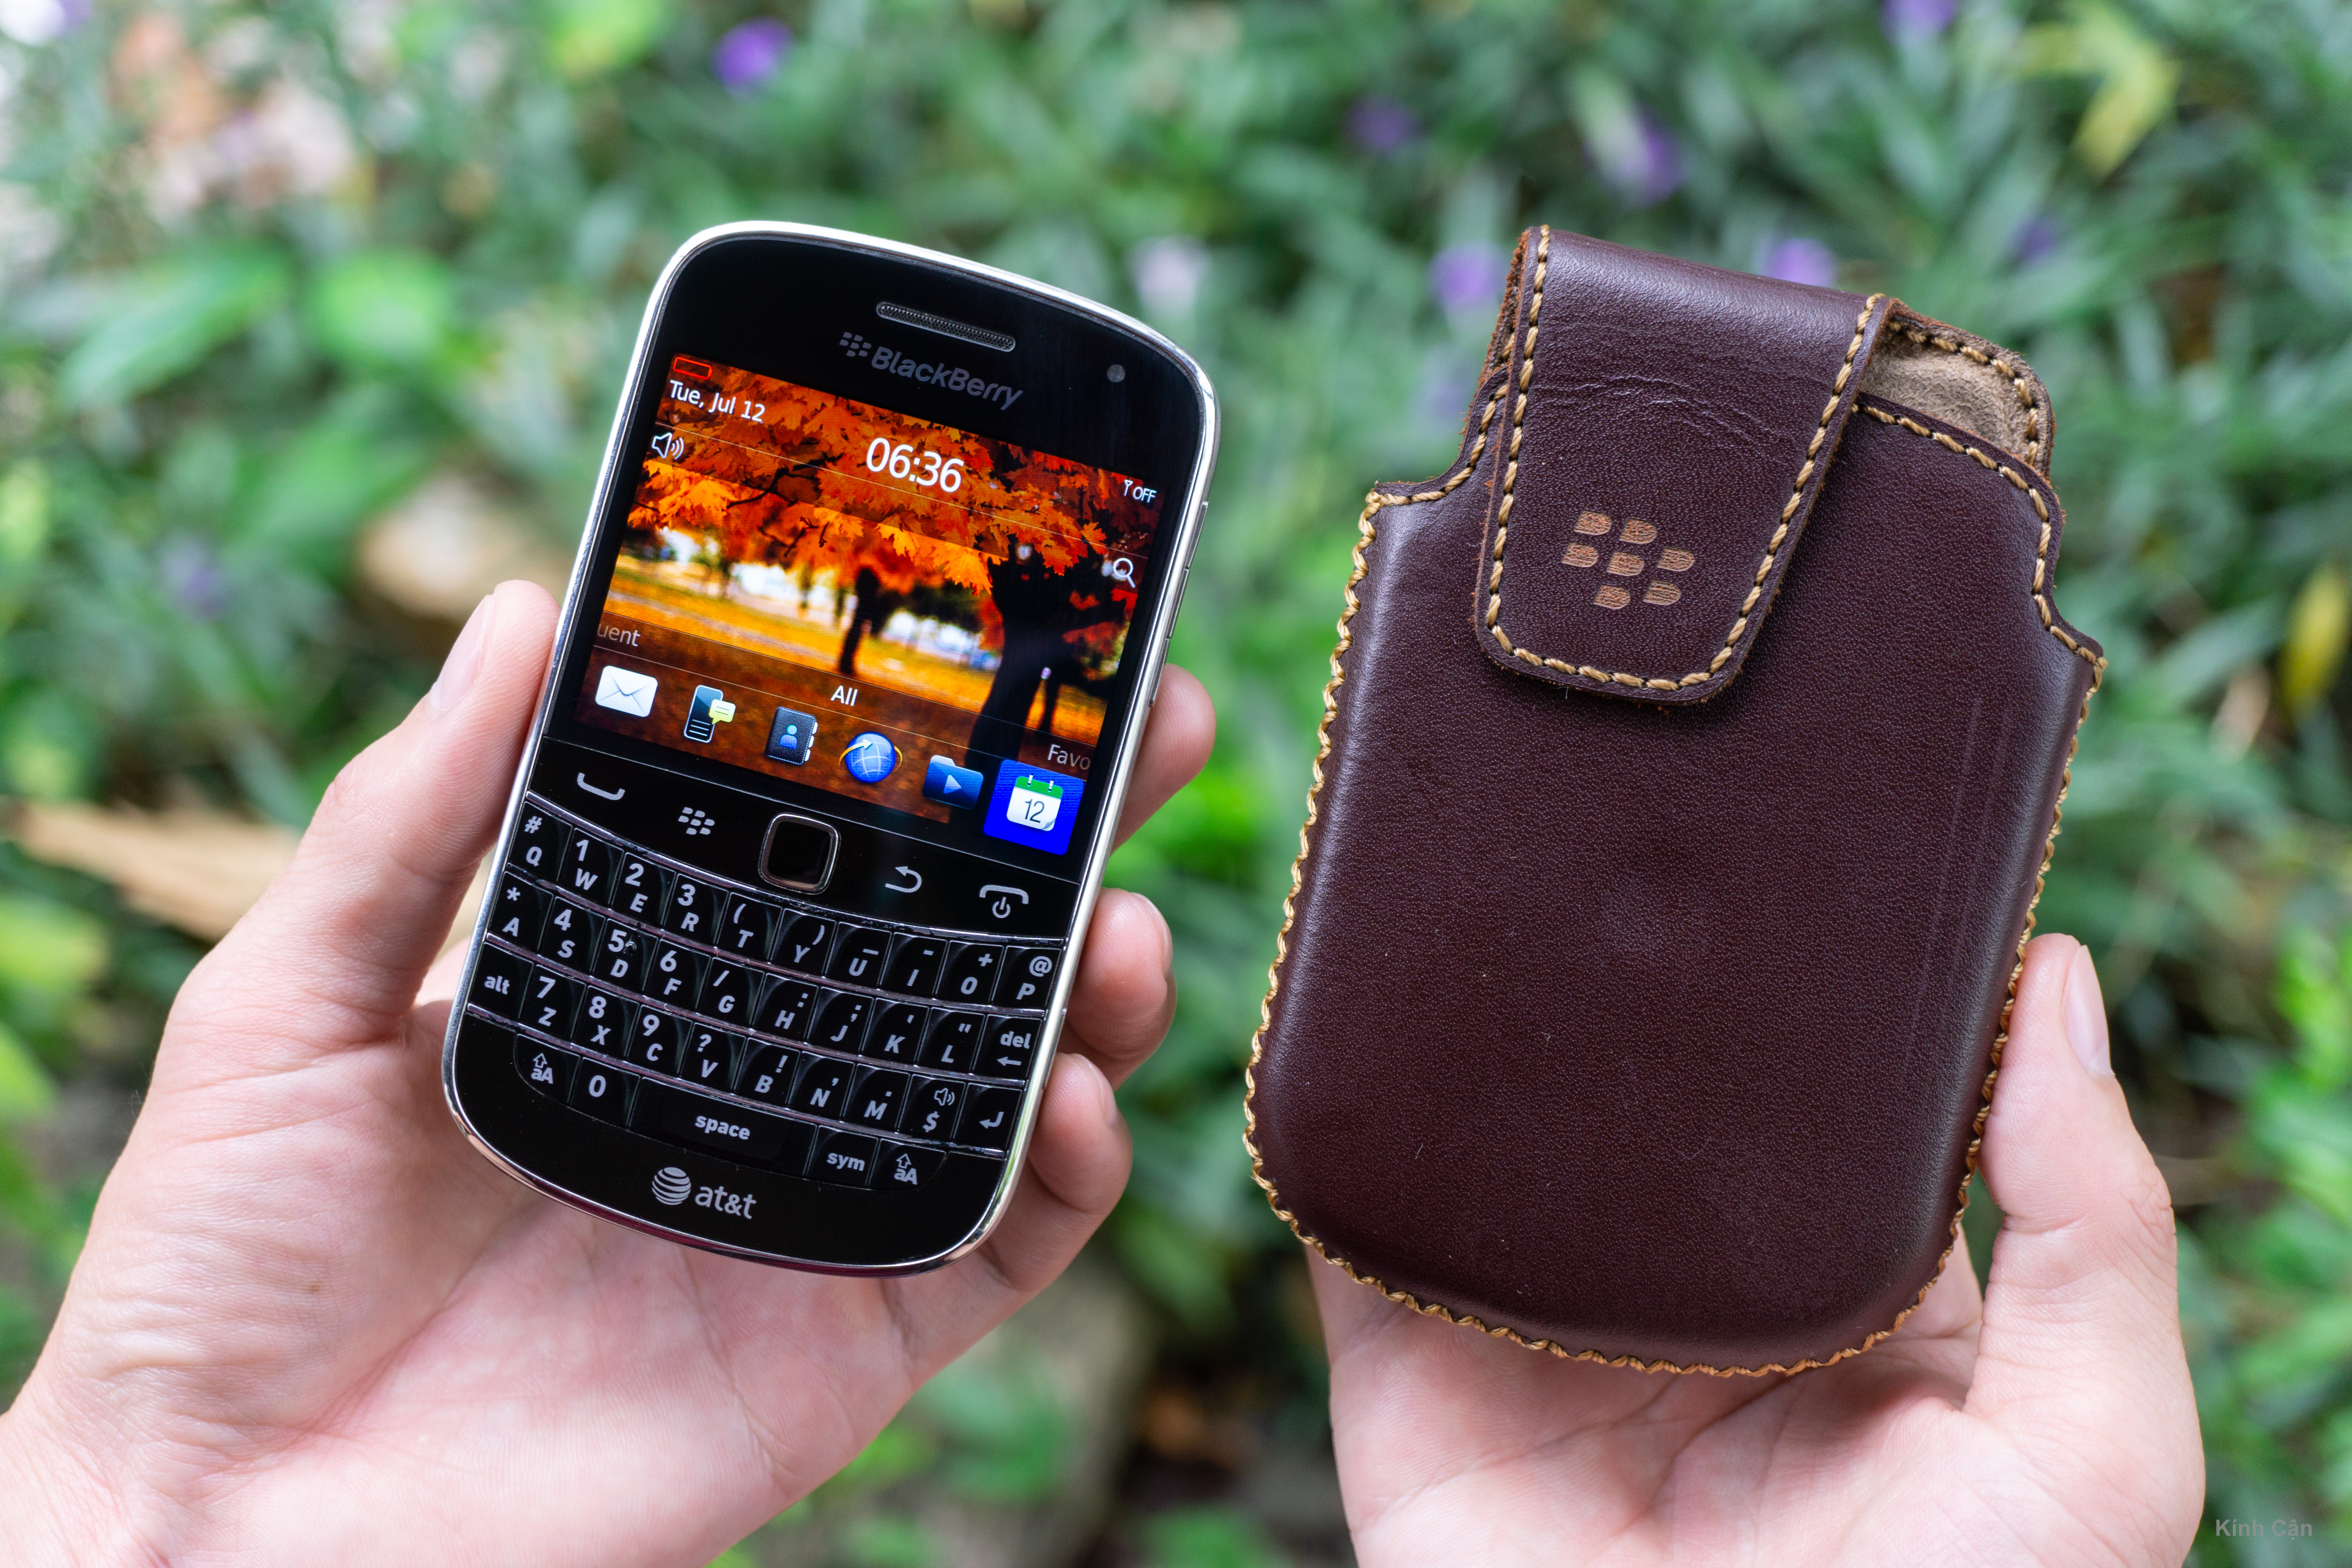 Điện thoại bàn phím cứng BlackBerry liệu còn phù hợp với xu hướng hiện nay? Vì sao anh em thích?